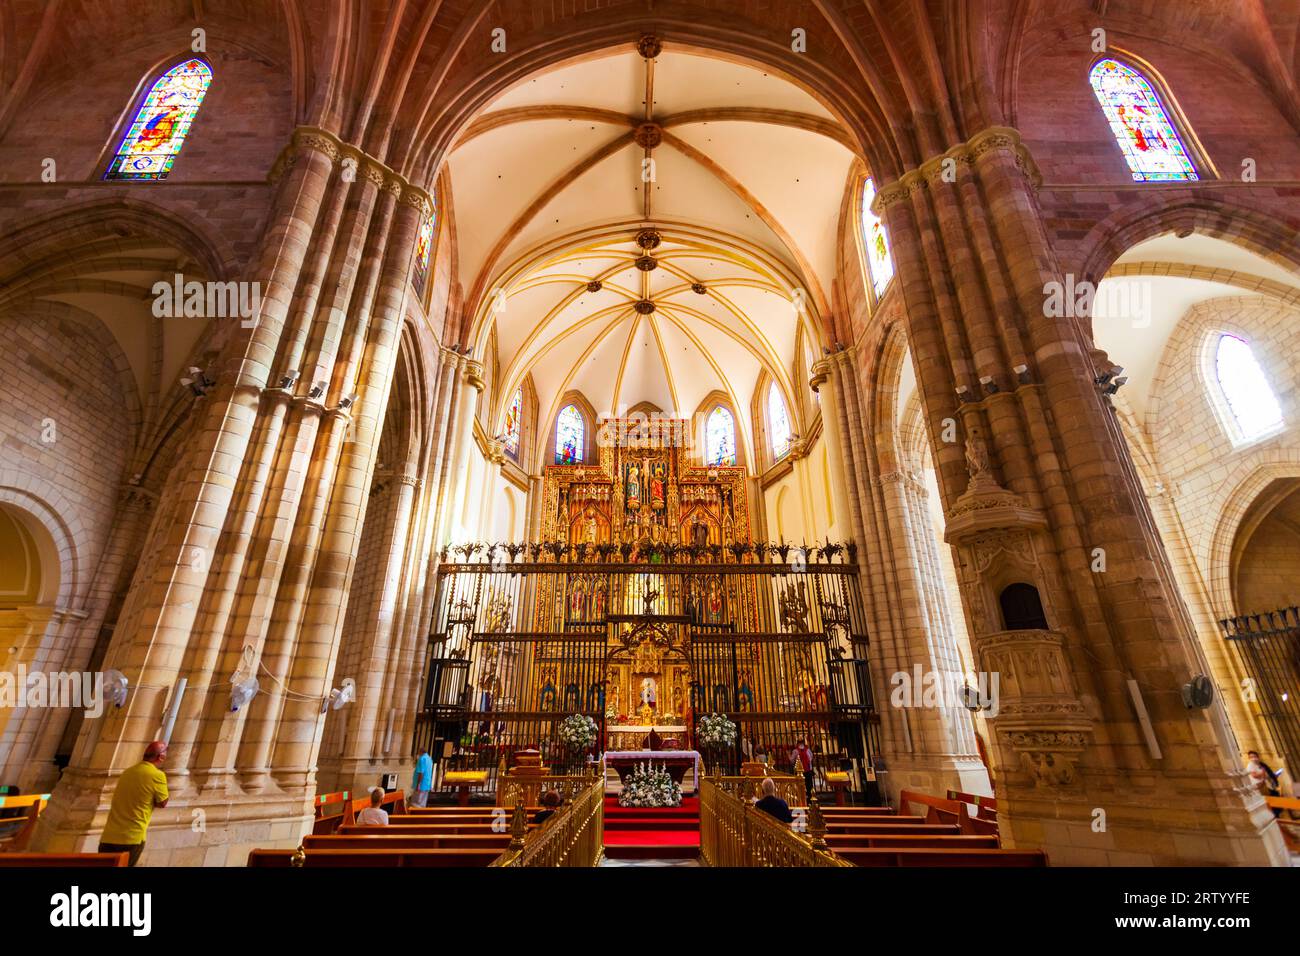 Murcie, Espagne - 19 octobre 2021: Intérieur de la cathédrale de Murcie. Murcia est une ville dans le sud-est de l'Espagne. Banque D'Images